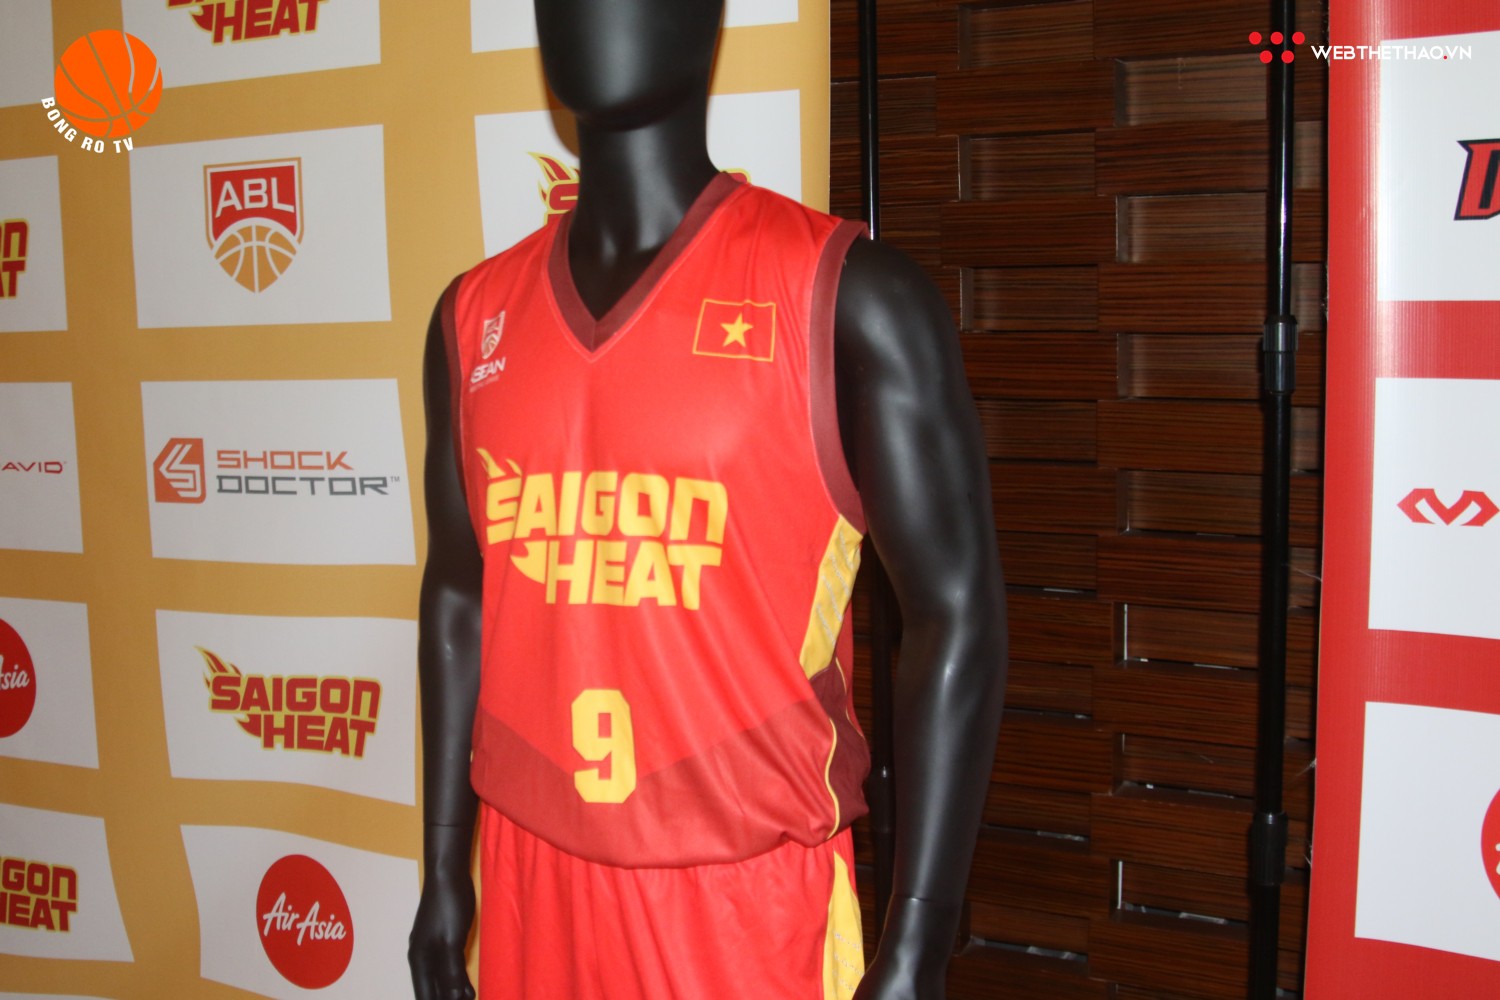 Lộ diện đồng phục thi đấu mới của Saigon Heat tại ABL 9 - Ảnh 2.